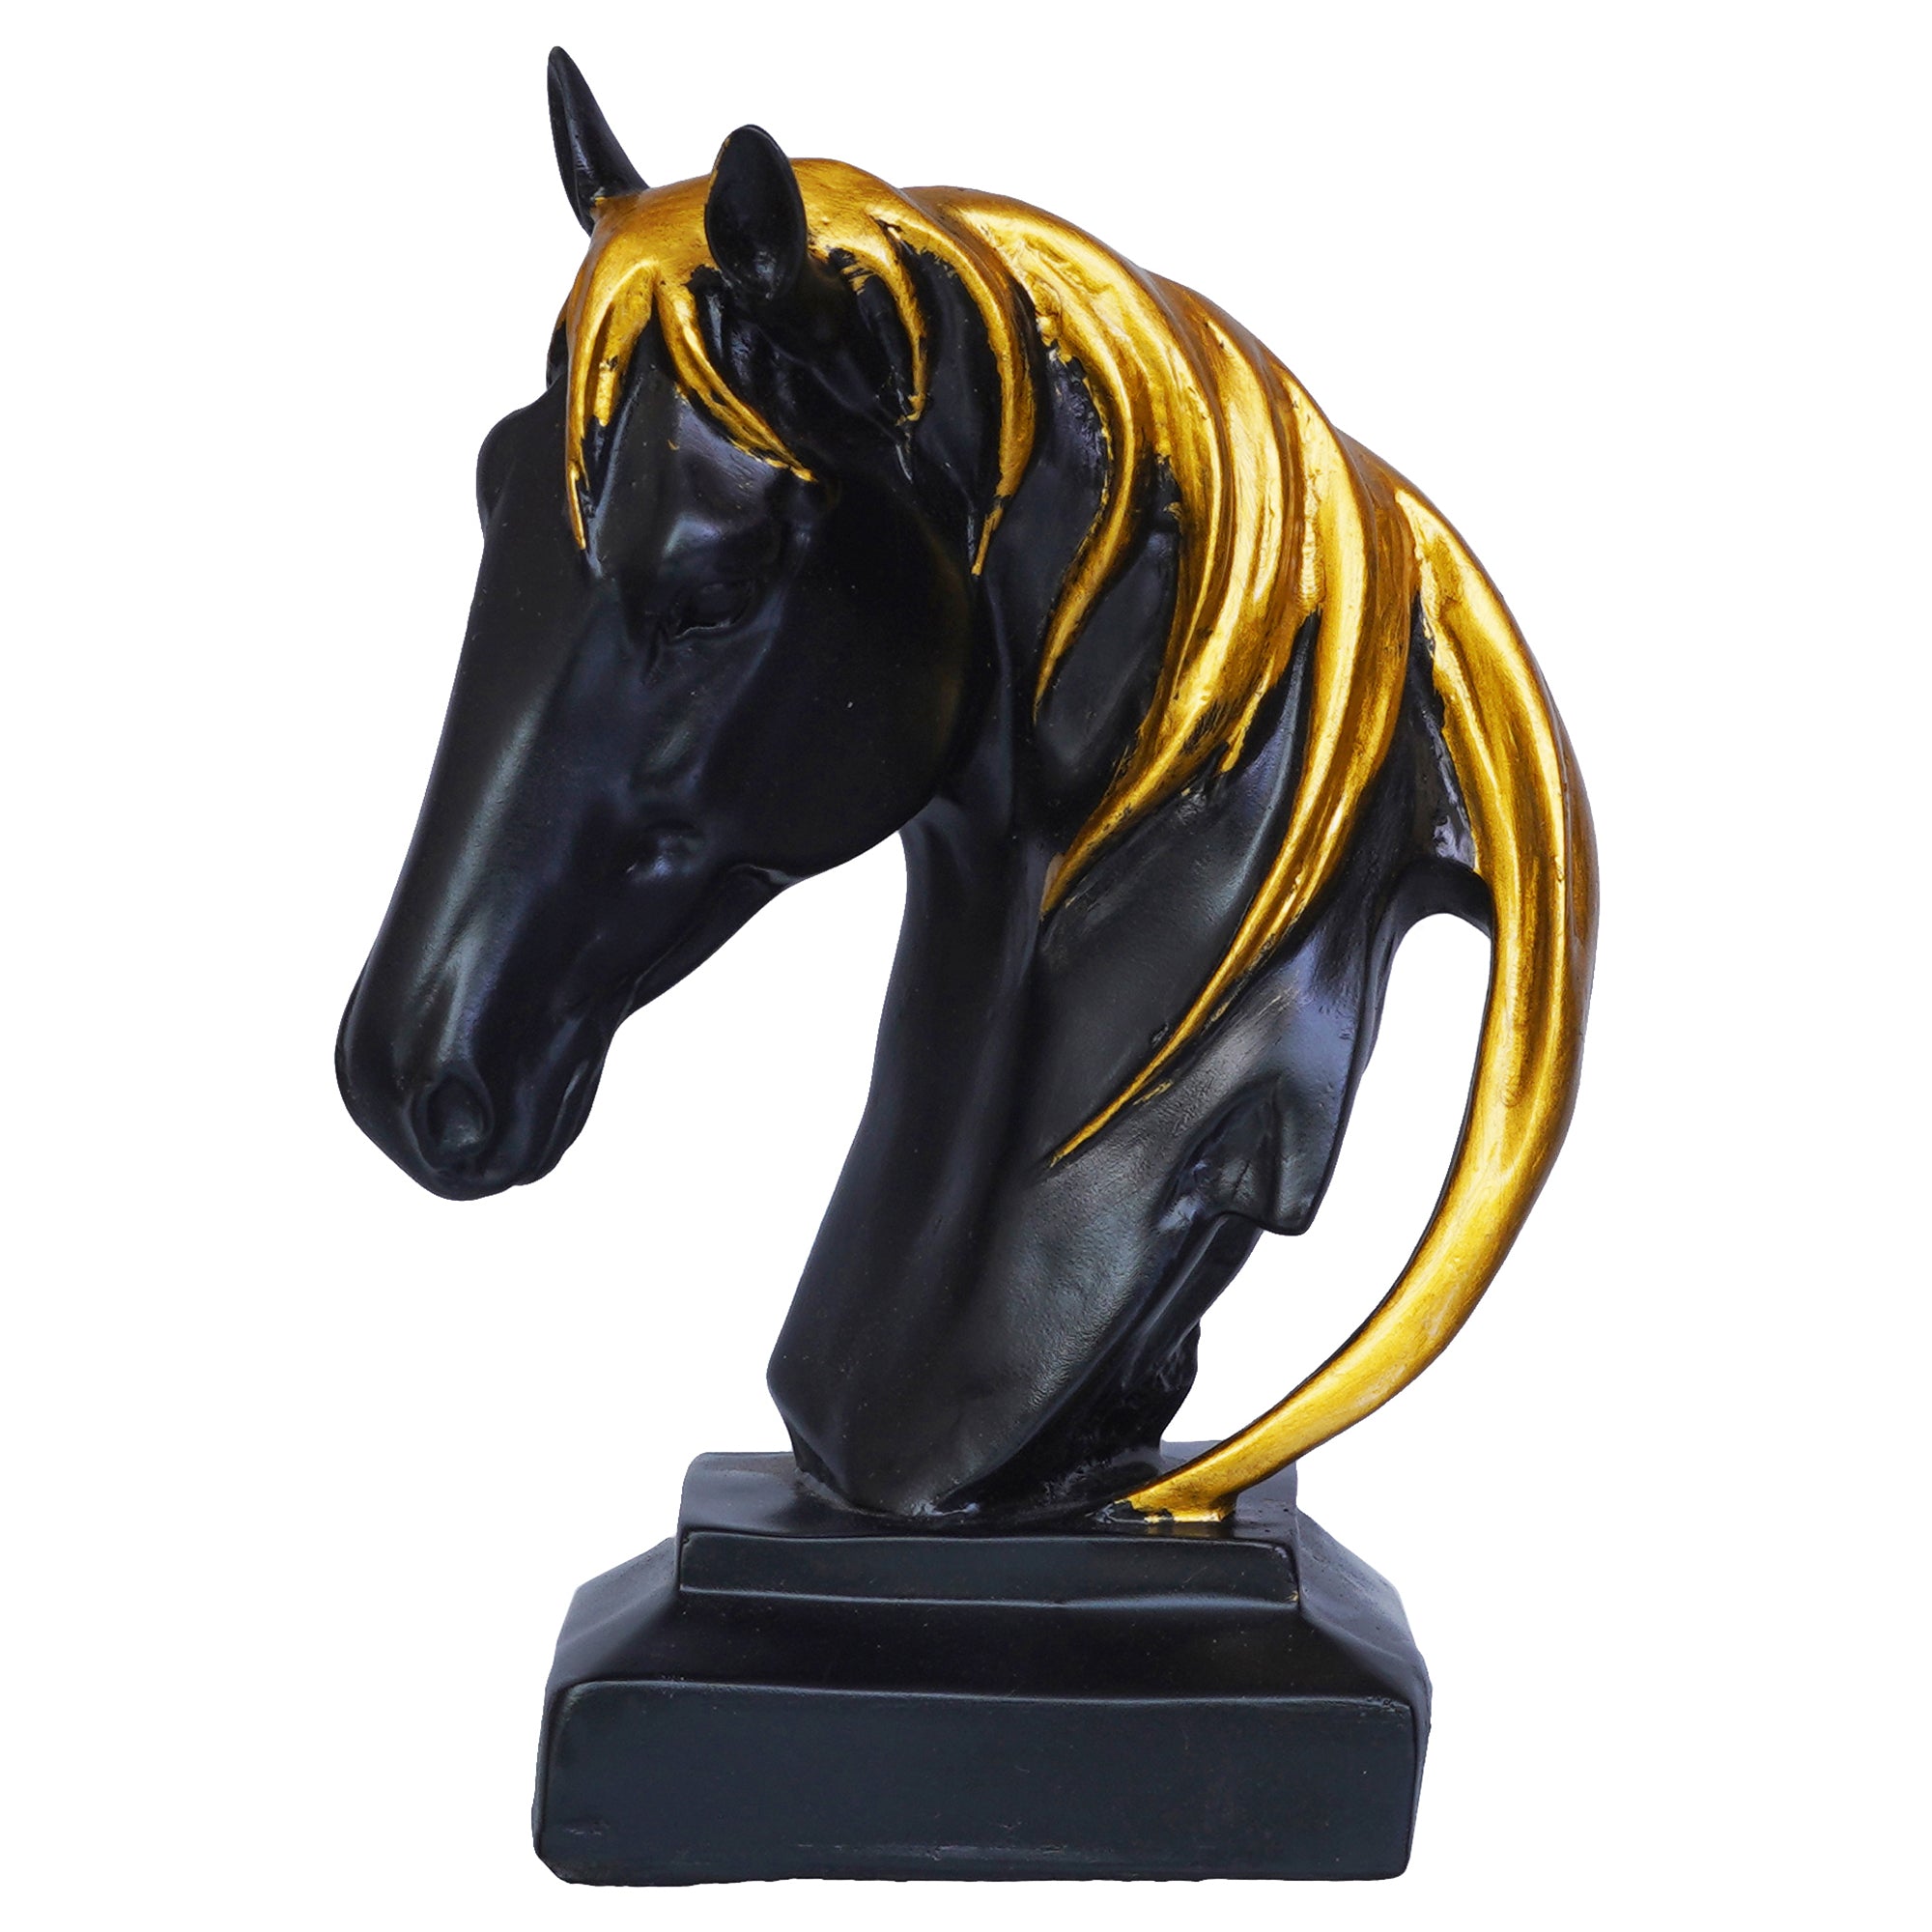 Black Horse Head Statue with Golden Hair Animal Figurine Showpiece 2